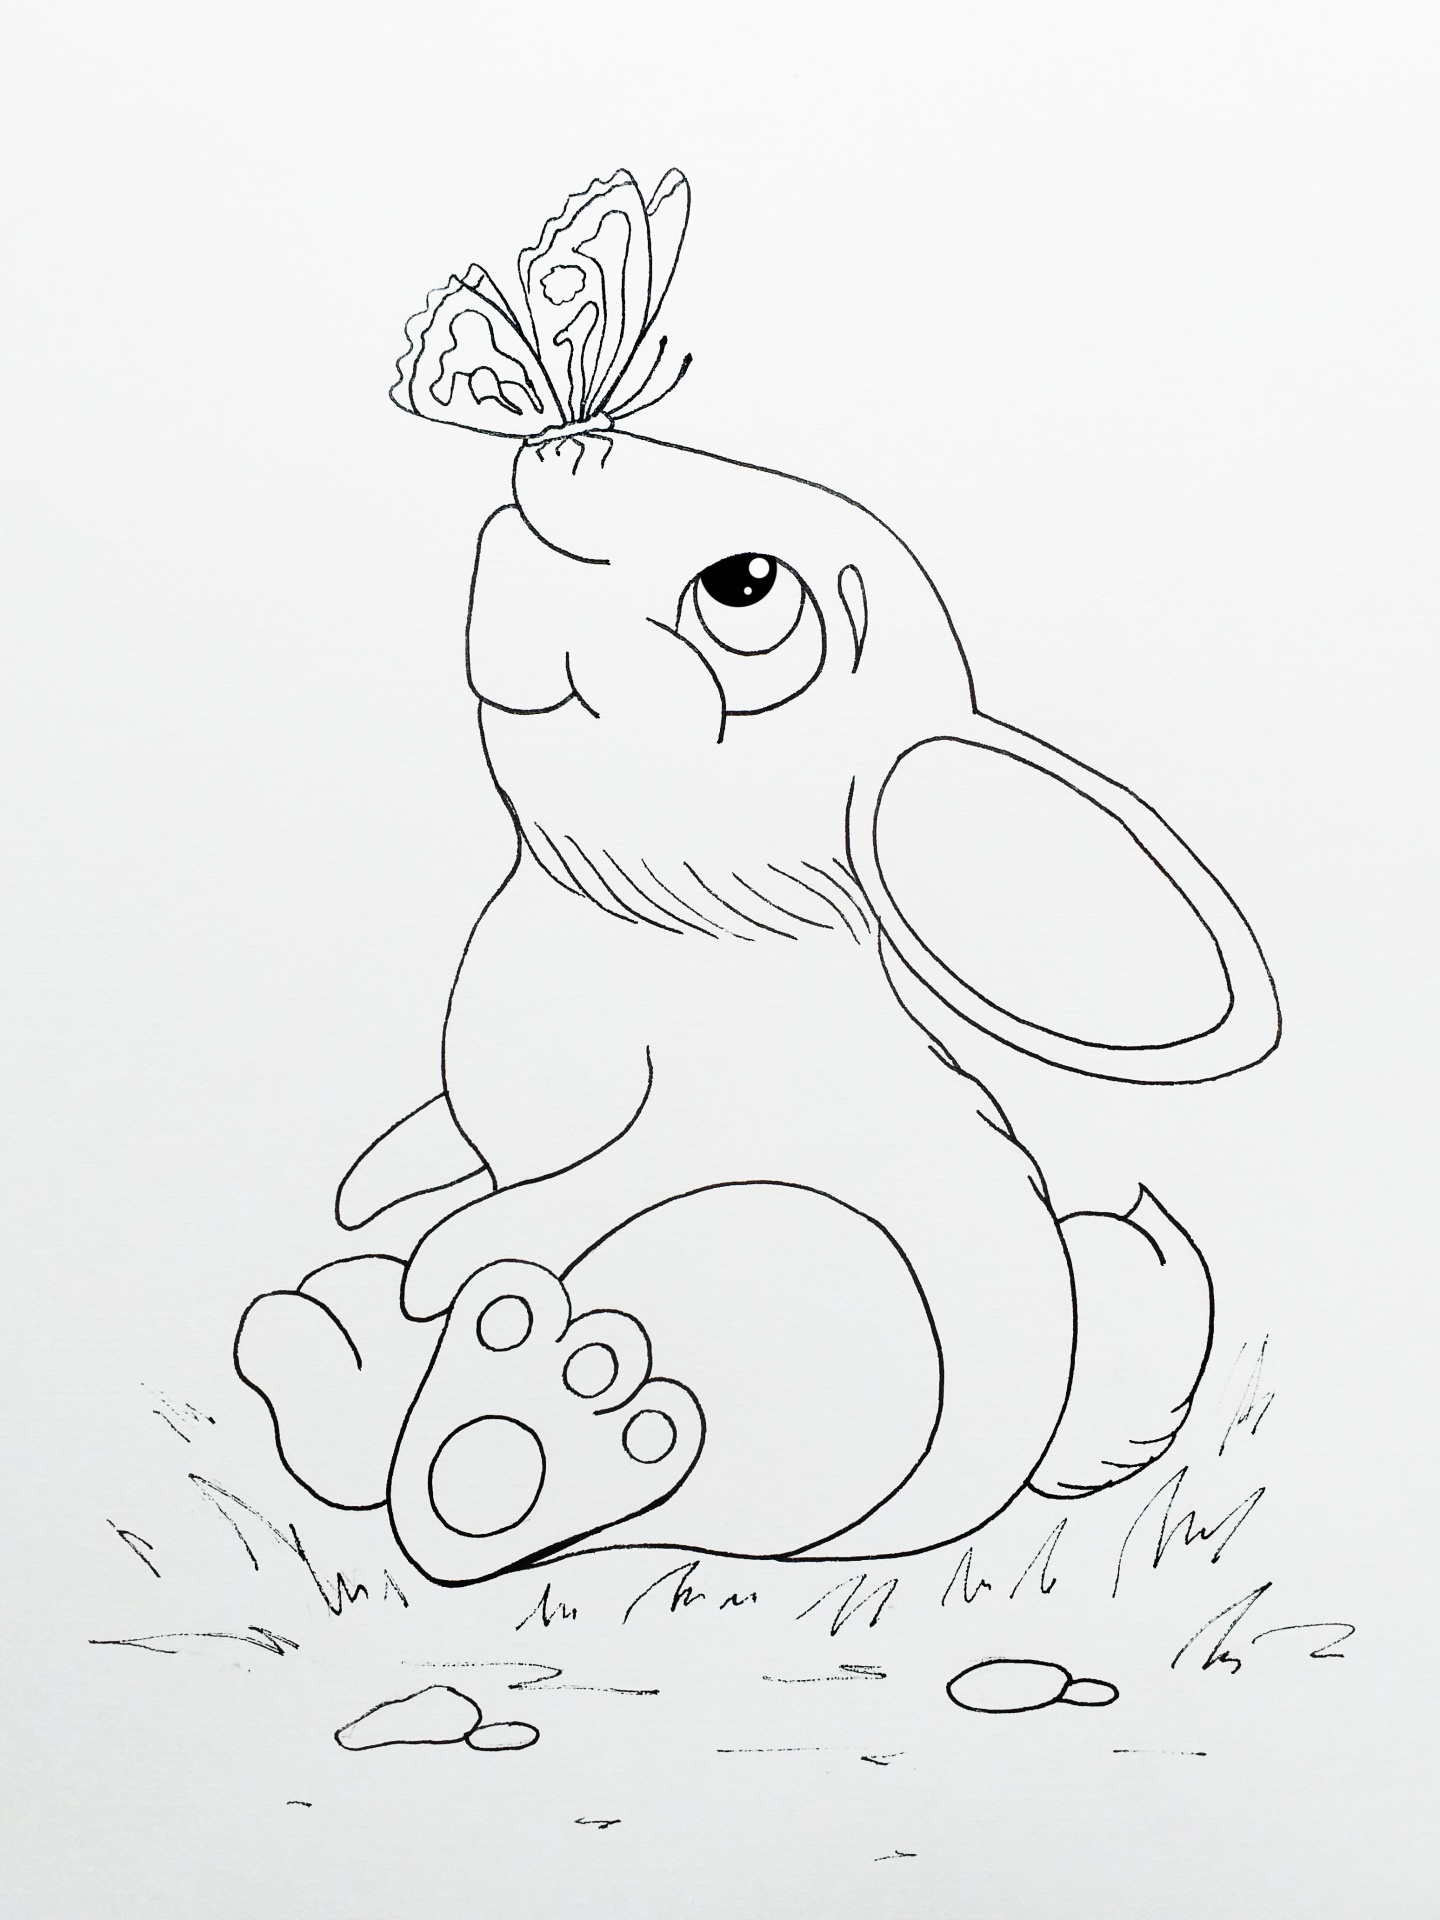 bunny, sketch, cute, drawing, sketch